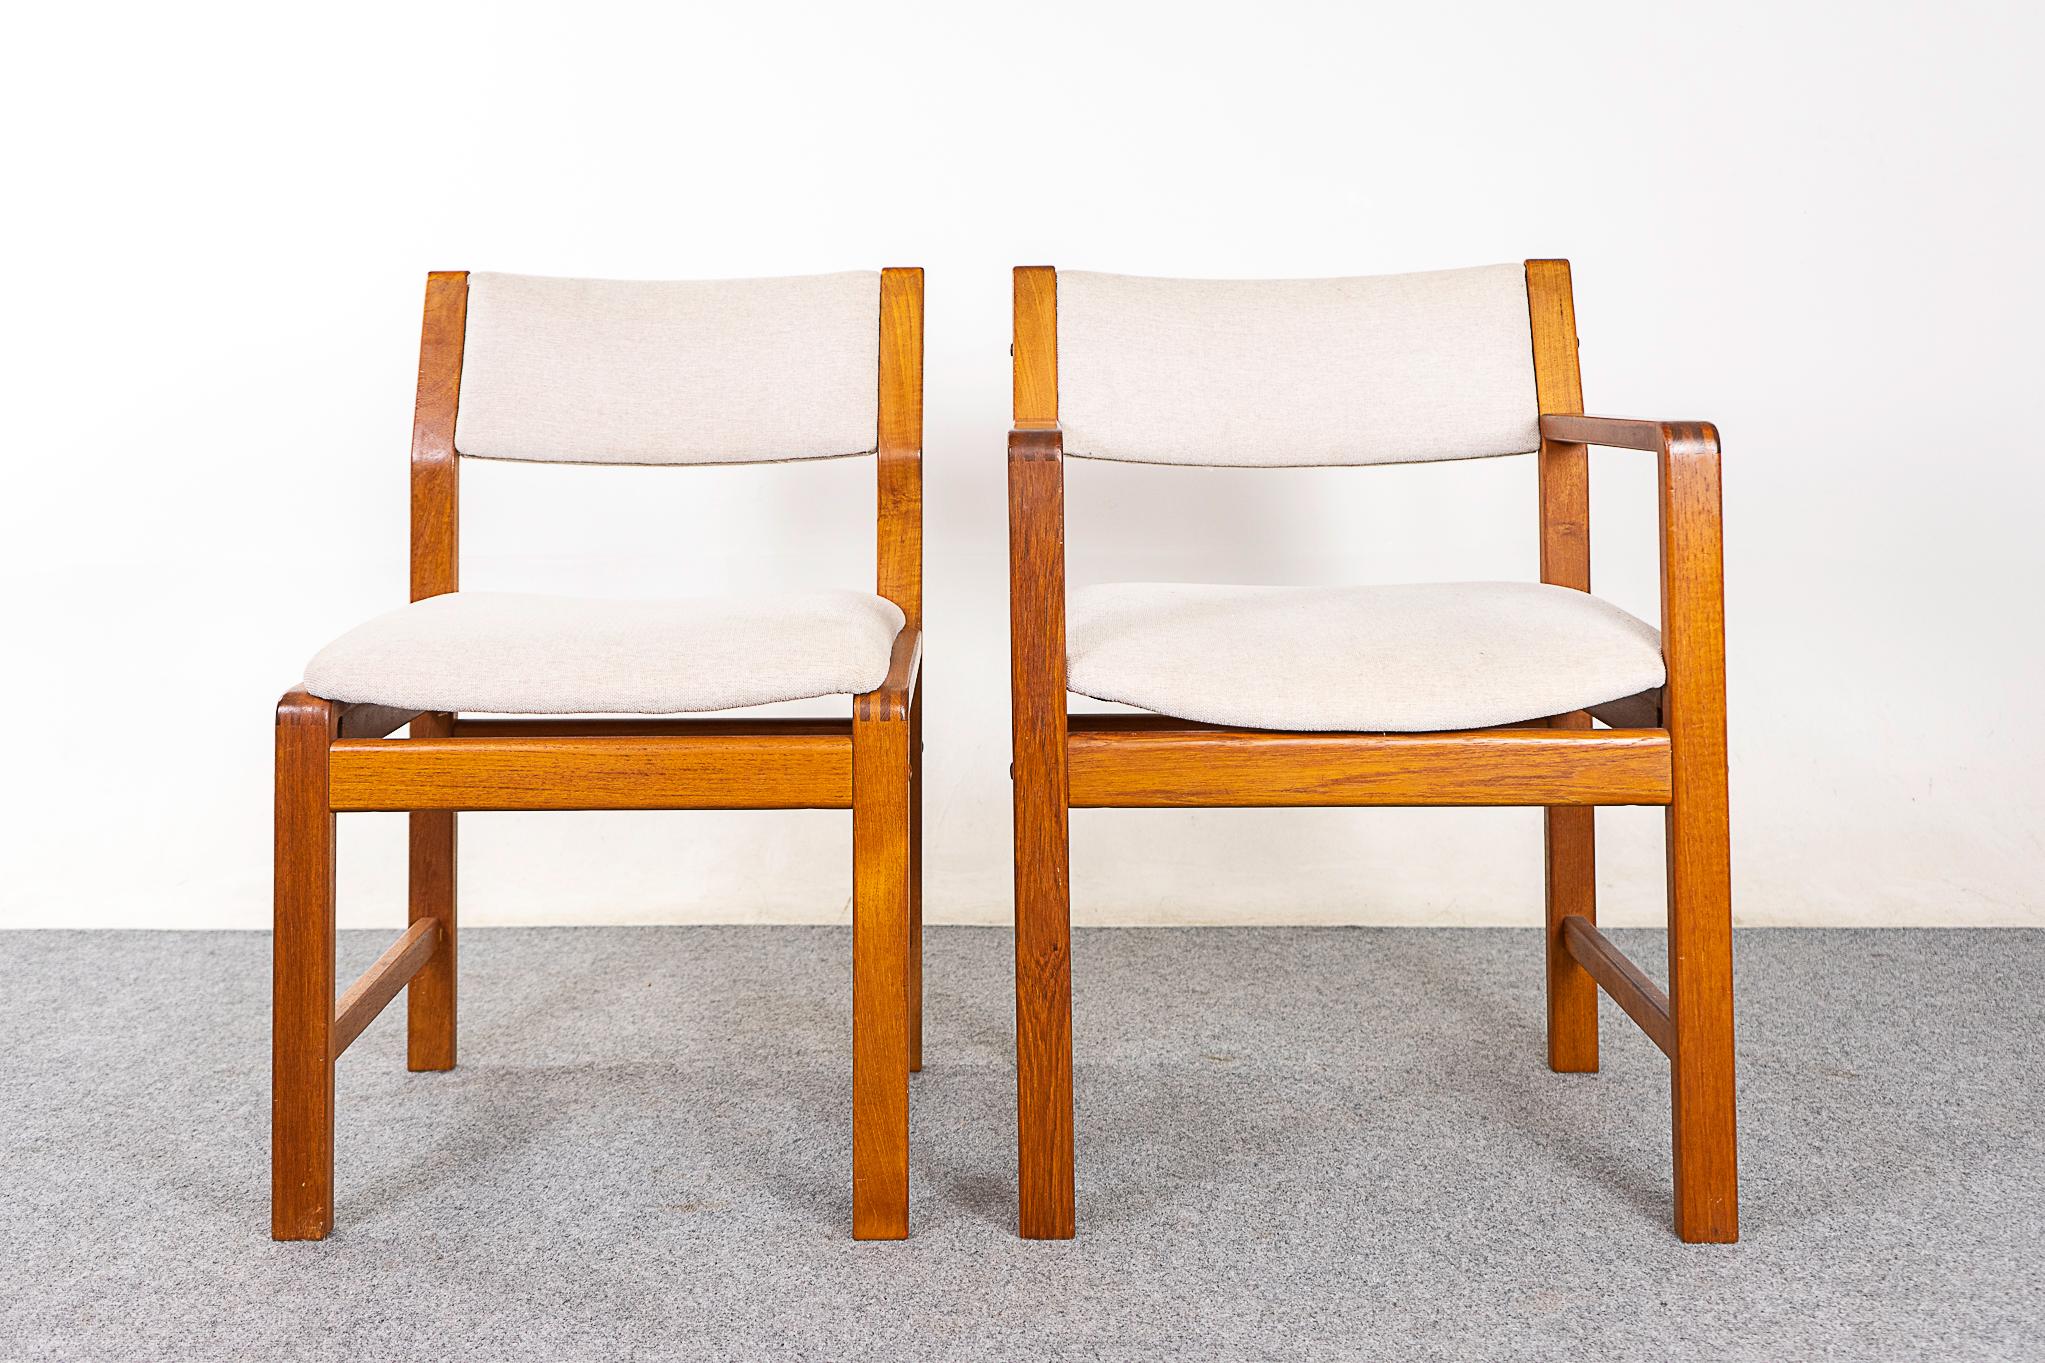 Chaises de salle à manger en teck, vers les années 1980. Design/One simple et robuste avec 2 chaises de capitaine.  

Article non restauré avec option d'achat en état restauré. La restauration comprend : les réparations, le ponçage, la teinture et